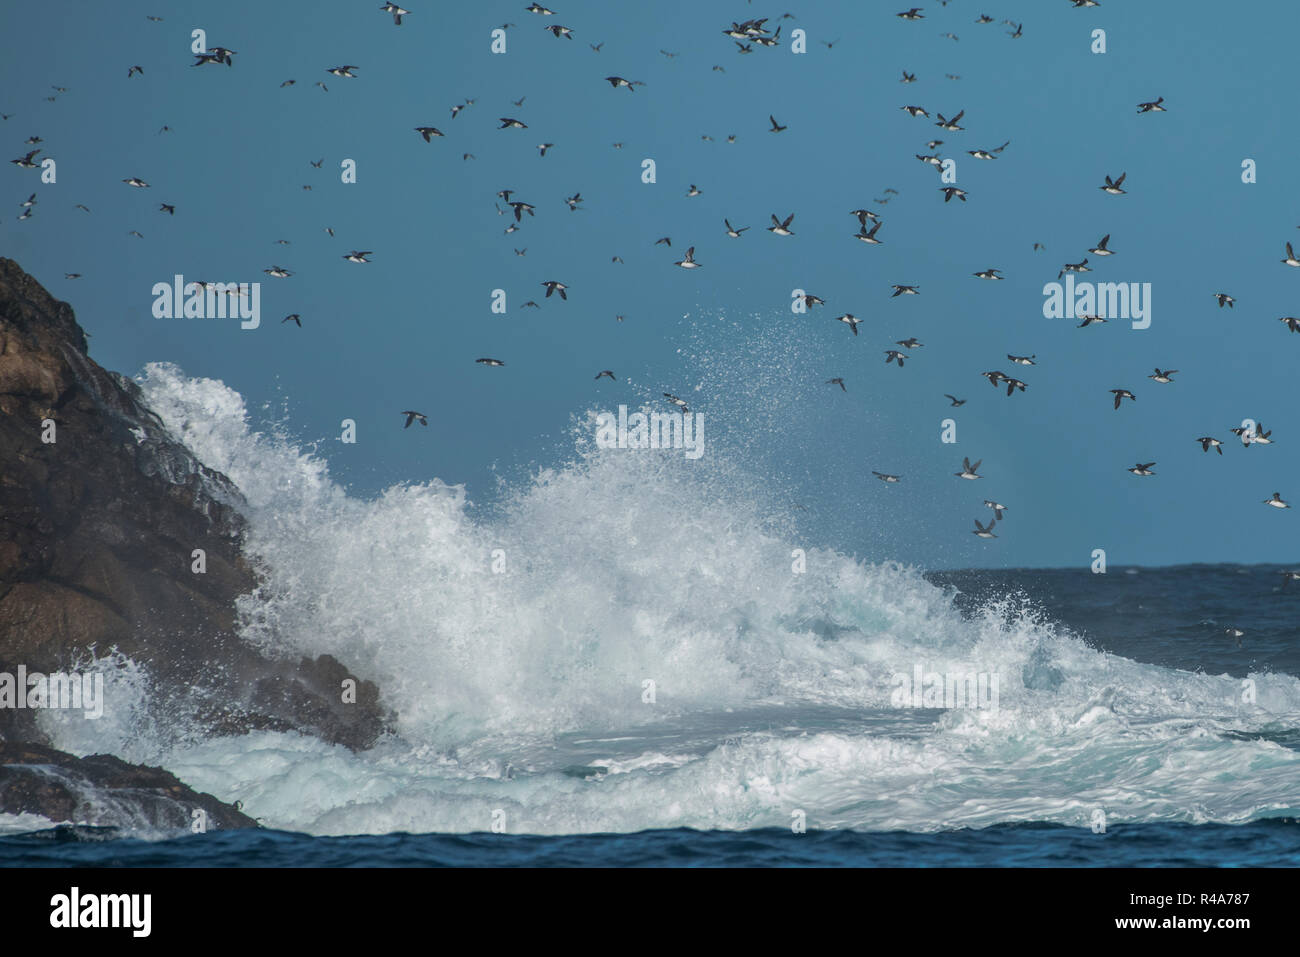 Les Guillemots marmettes survoler les eaux de l'océan au Farallon Islands au large de la Californie. Banque D'Images